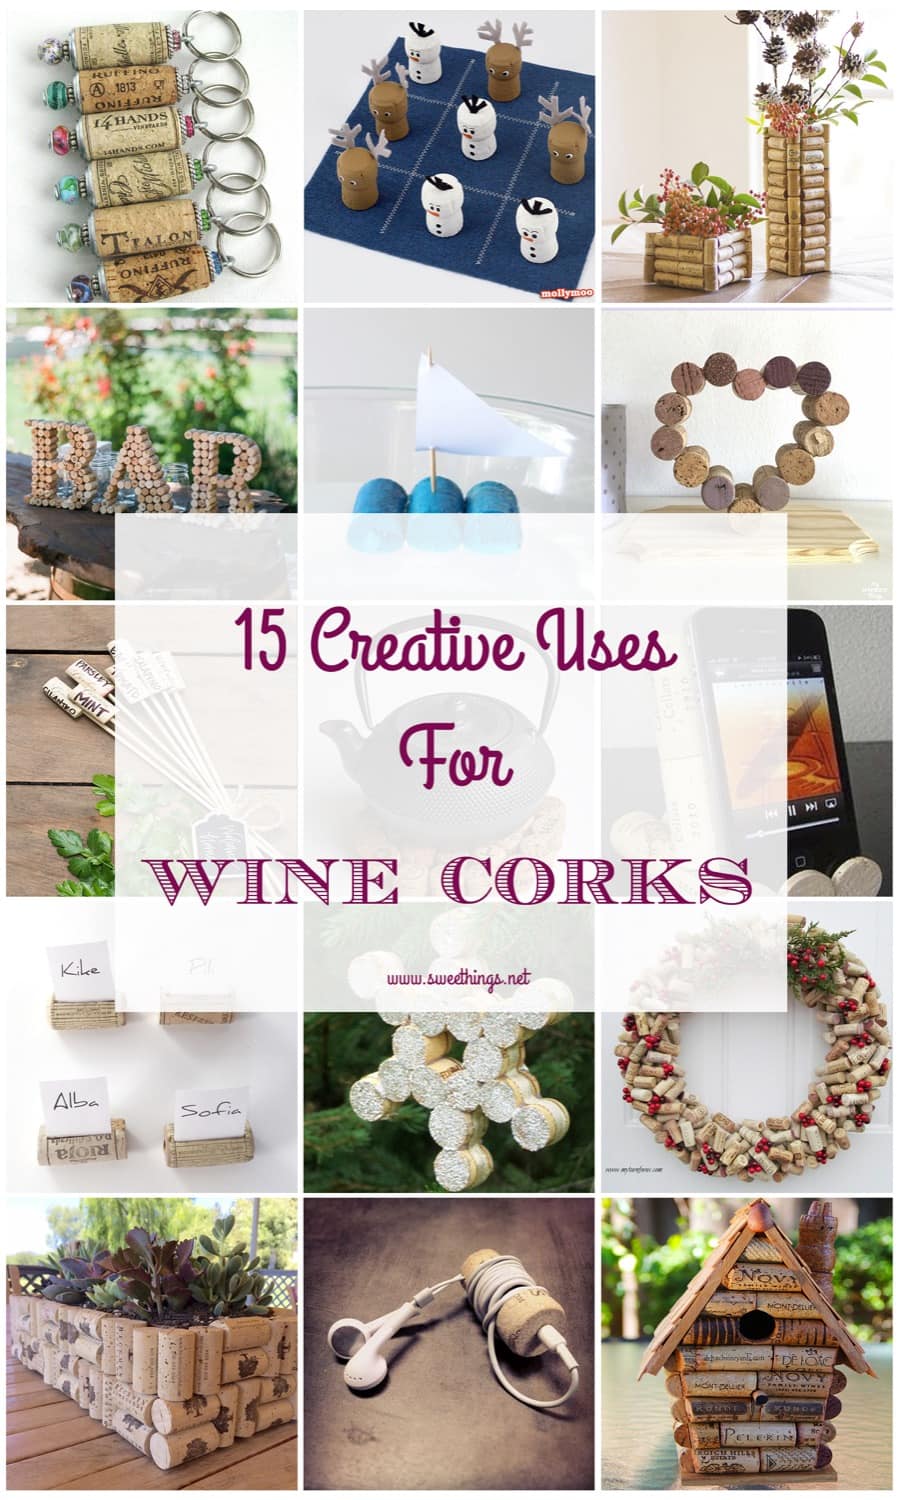 15 creative uses for wine corks · Via www.sweethings.net